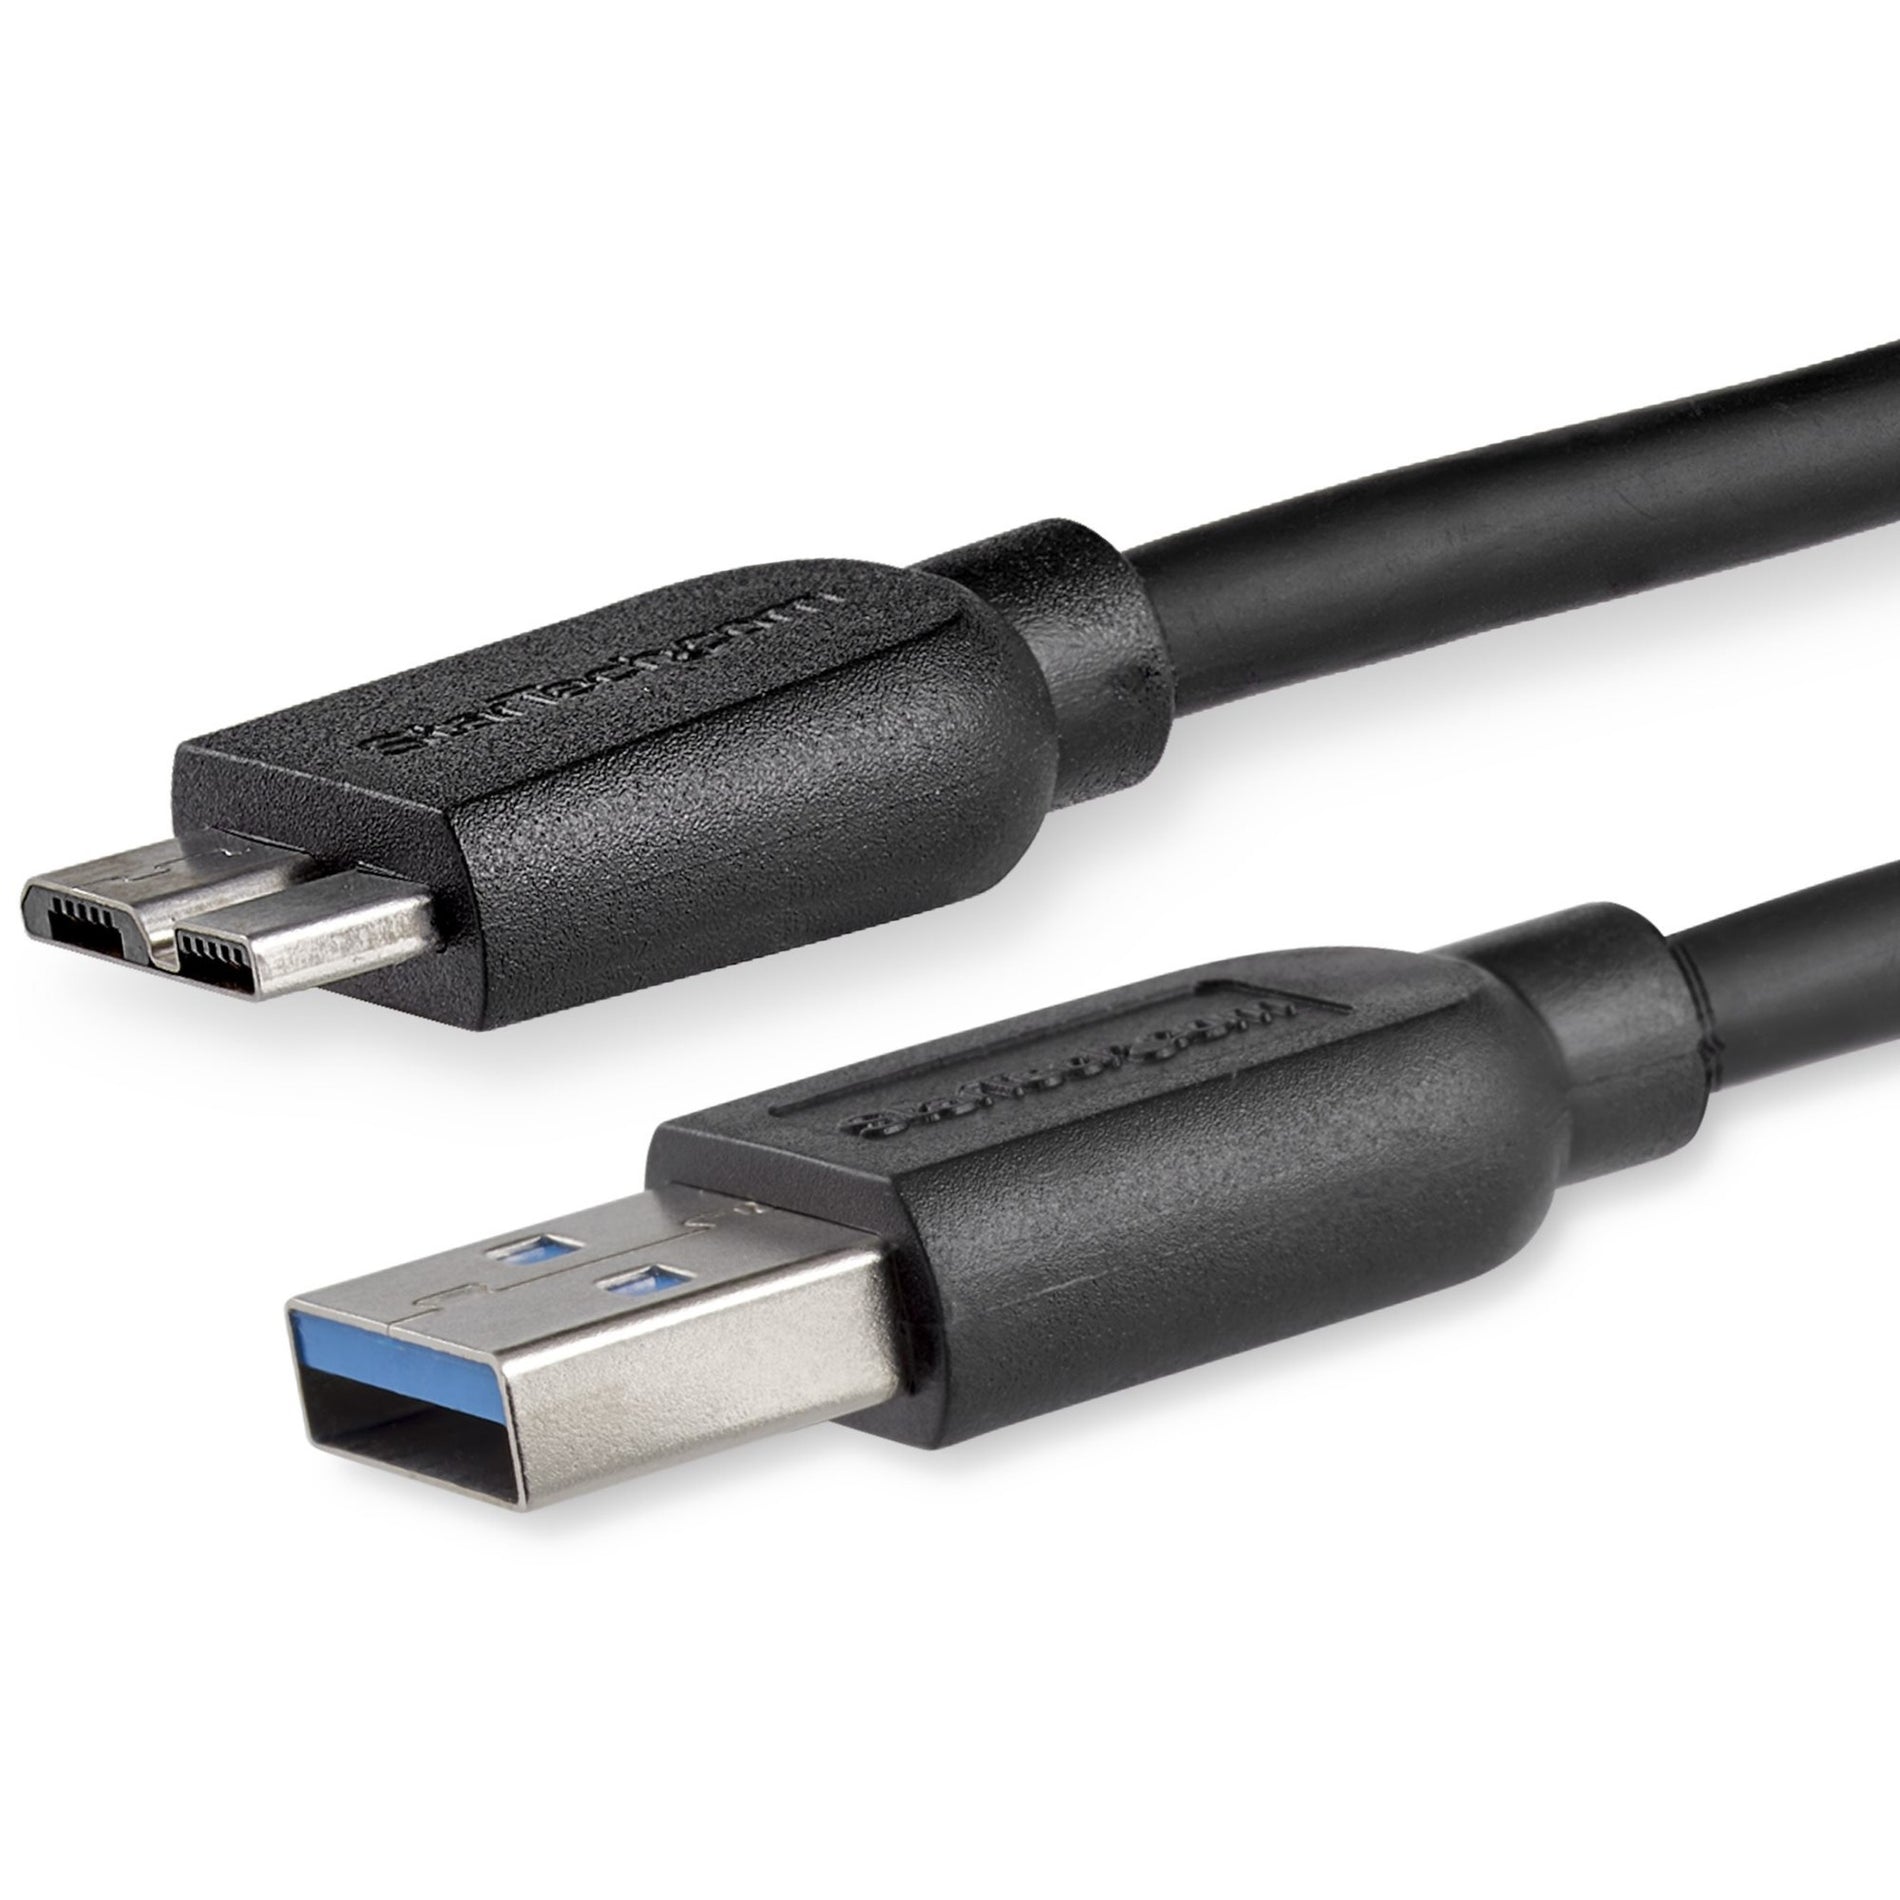 StarTech.com Cable USB 3.0 SuperSpeed delgado de 2 m (6 pies) USB3AUB2MS A a Micro B - M/M Transferencia de datos rápida Flexible y Duradero